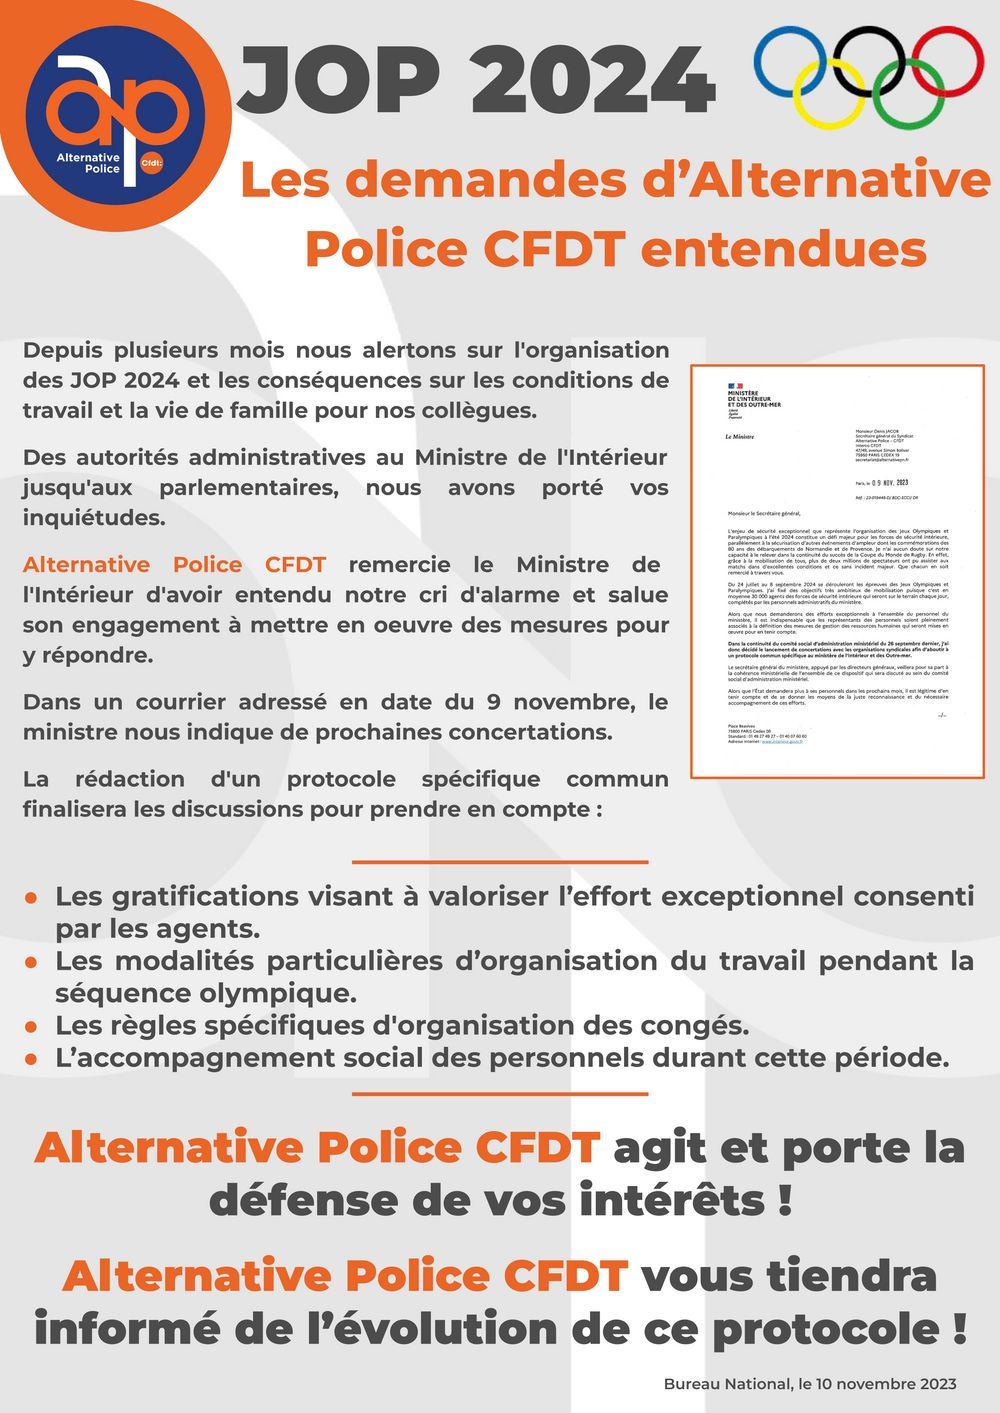 JOP 2024 : Les demandes d’Alternative Police CFDT entendues !